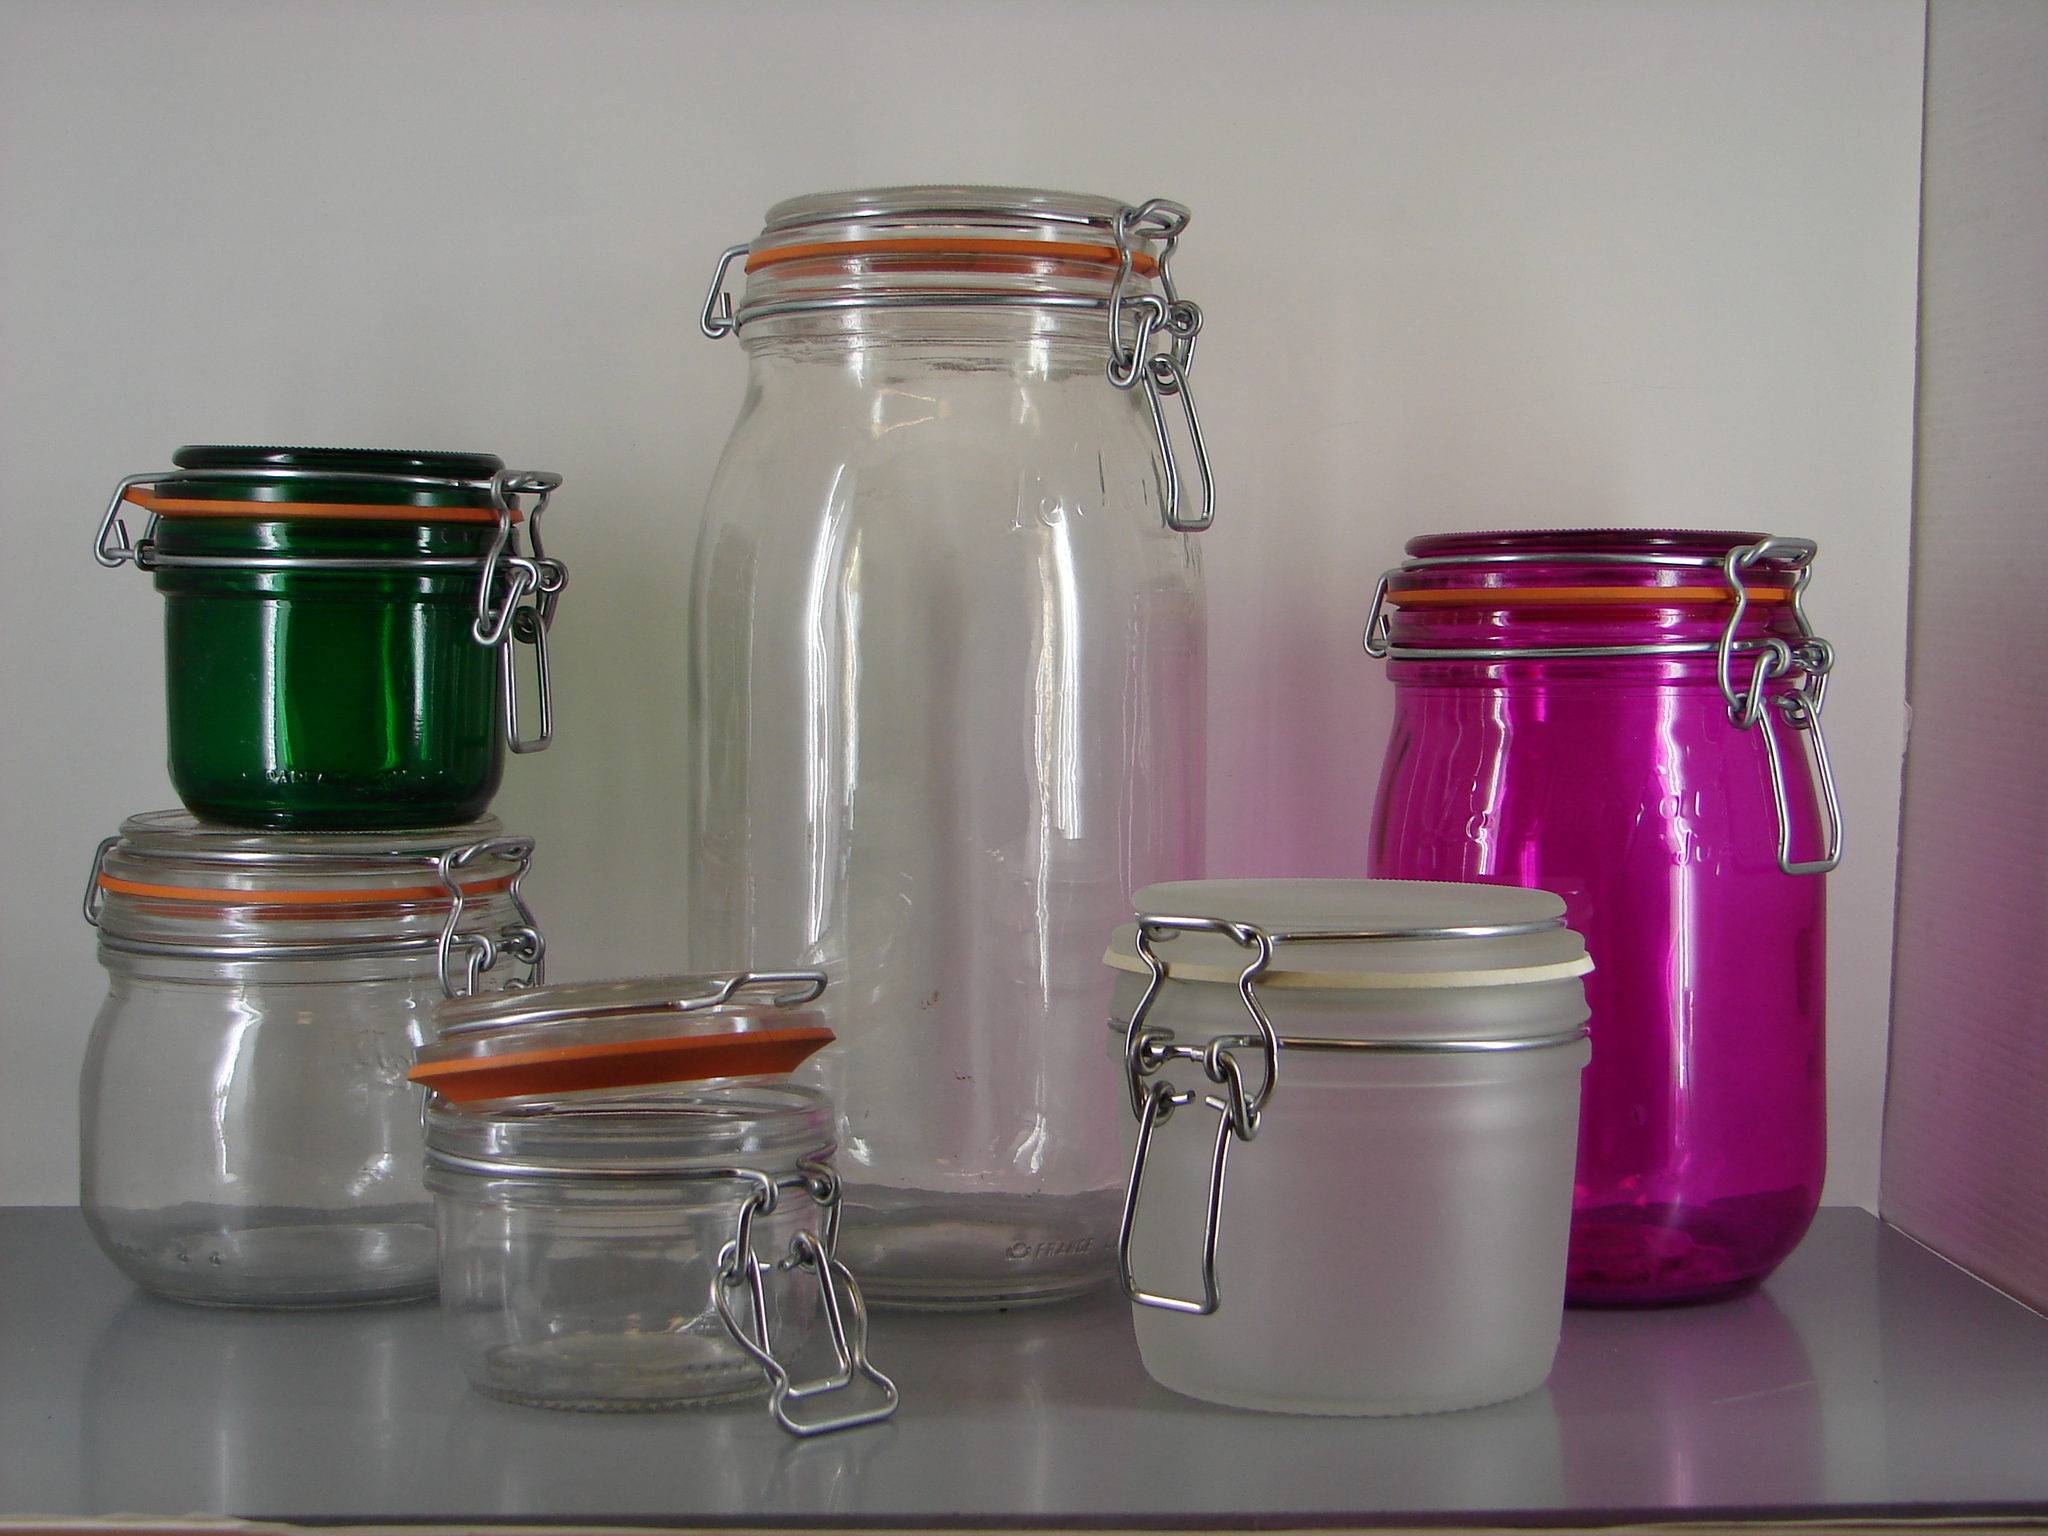 Coloured food storage jars